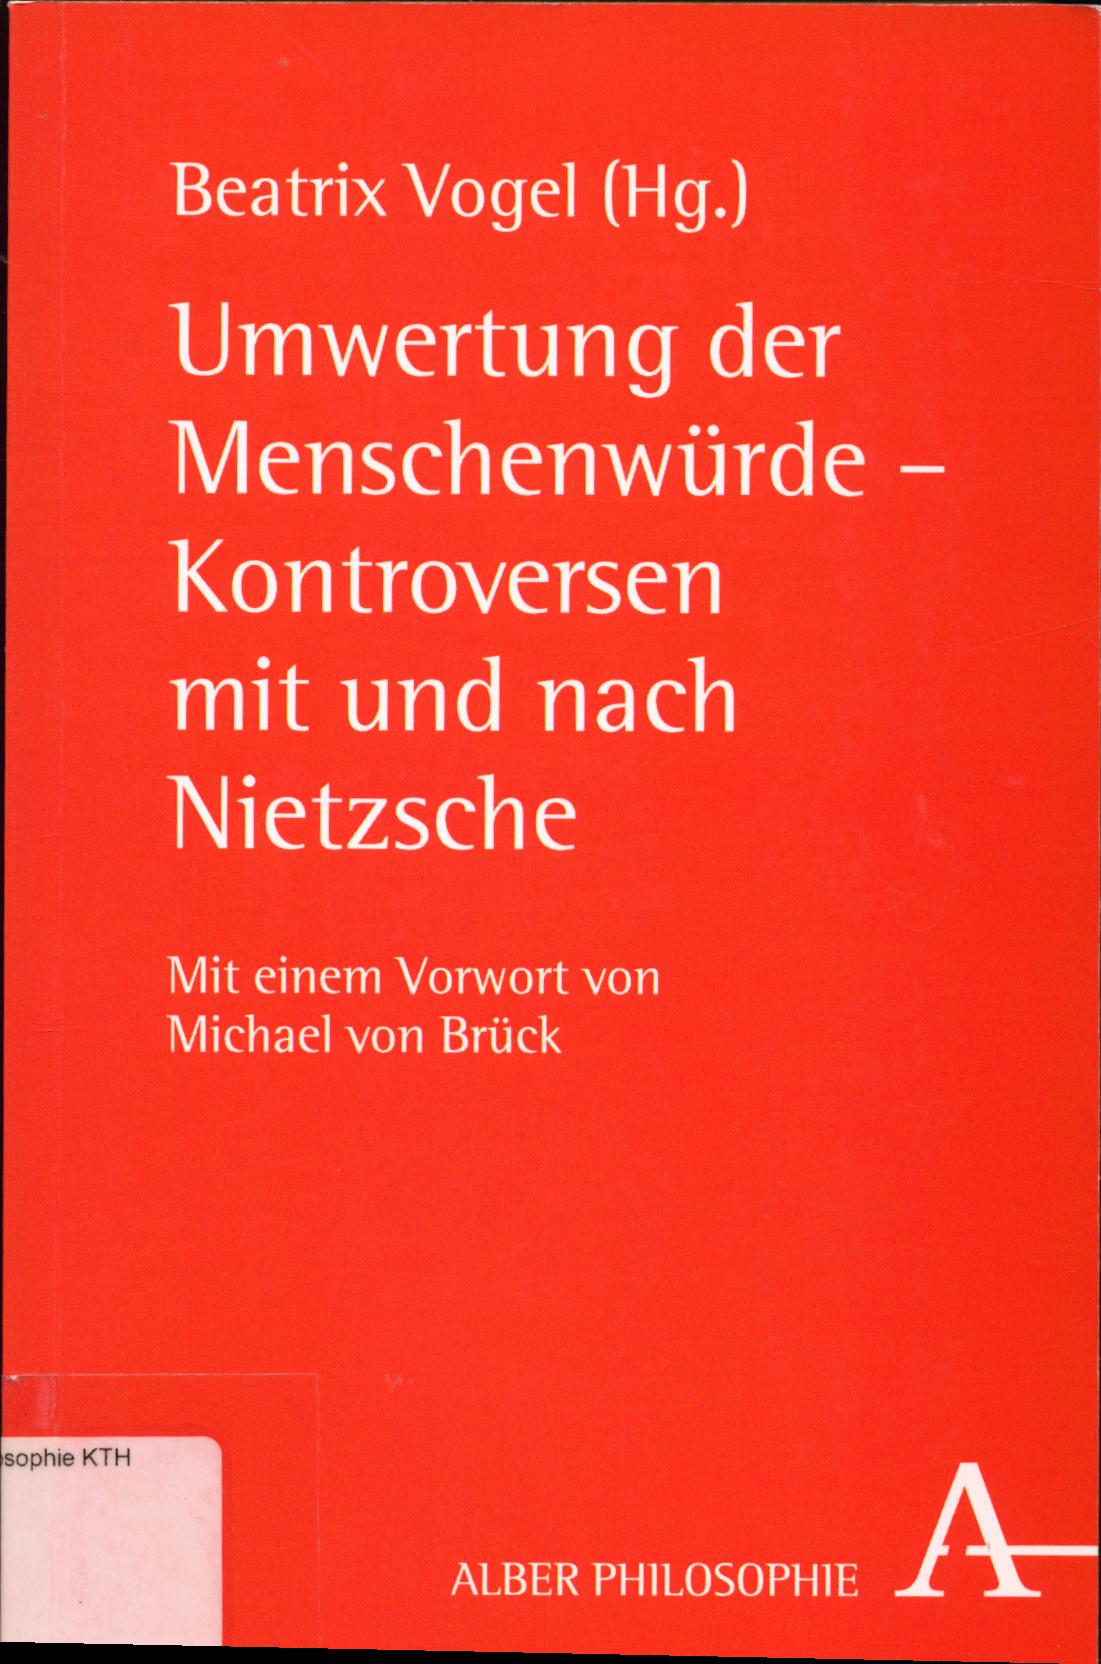 Umwertung der Menschenwürde - Kontroversen mit und nach Nietzsche  2. Auflage - Vogel, Beatrix und Michael von Brück